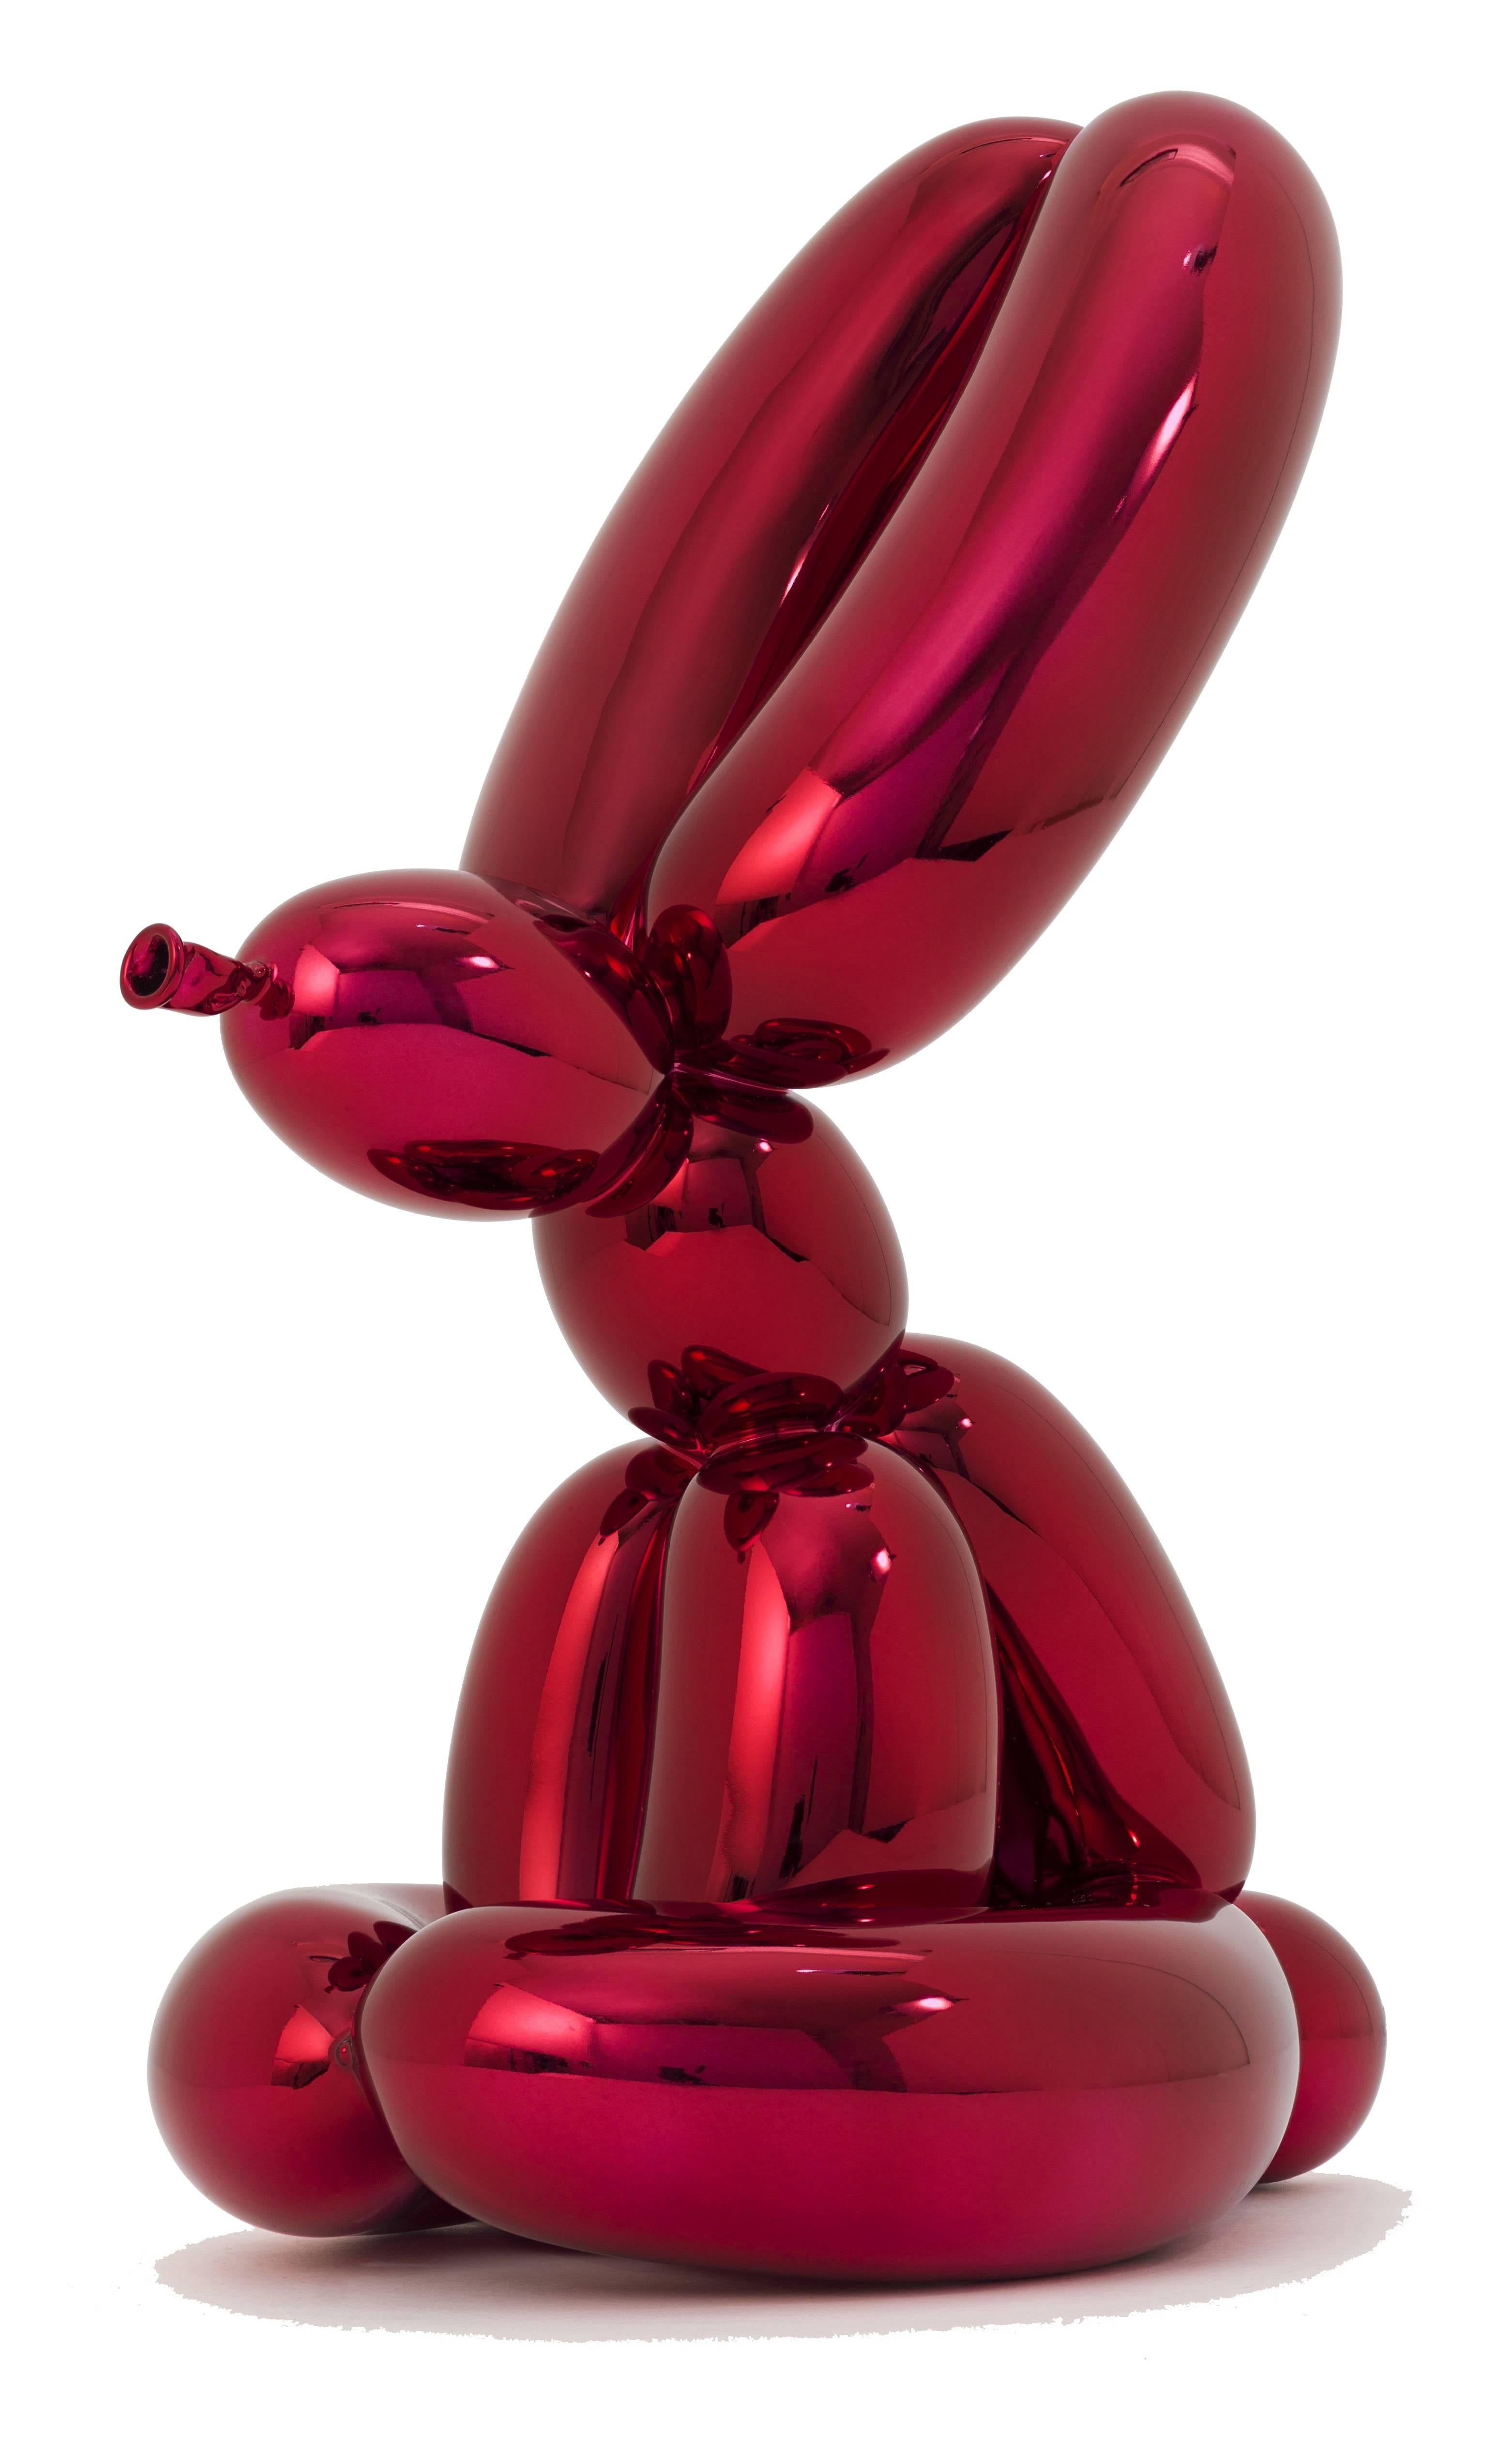 Balloon Rabbit, Balloon Swan, Balloon Monkey - Sculpture by Jeff Koons